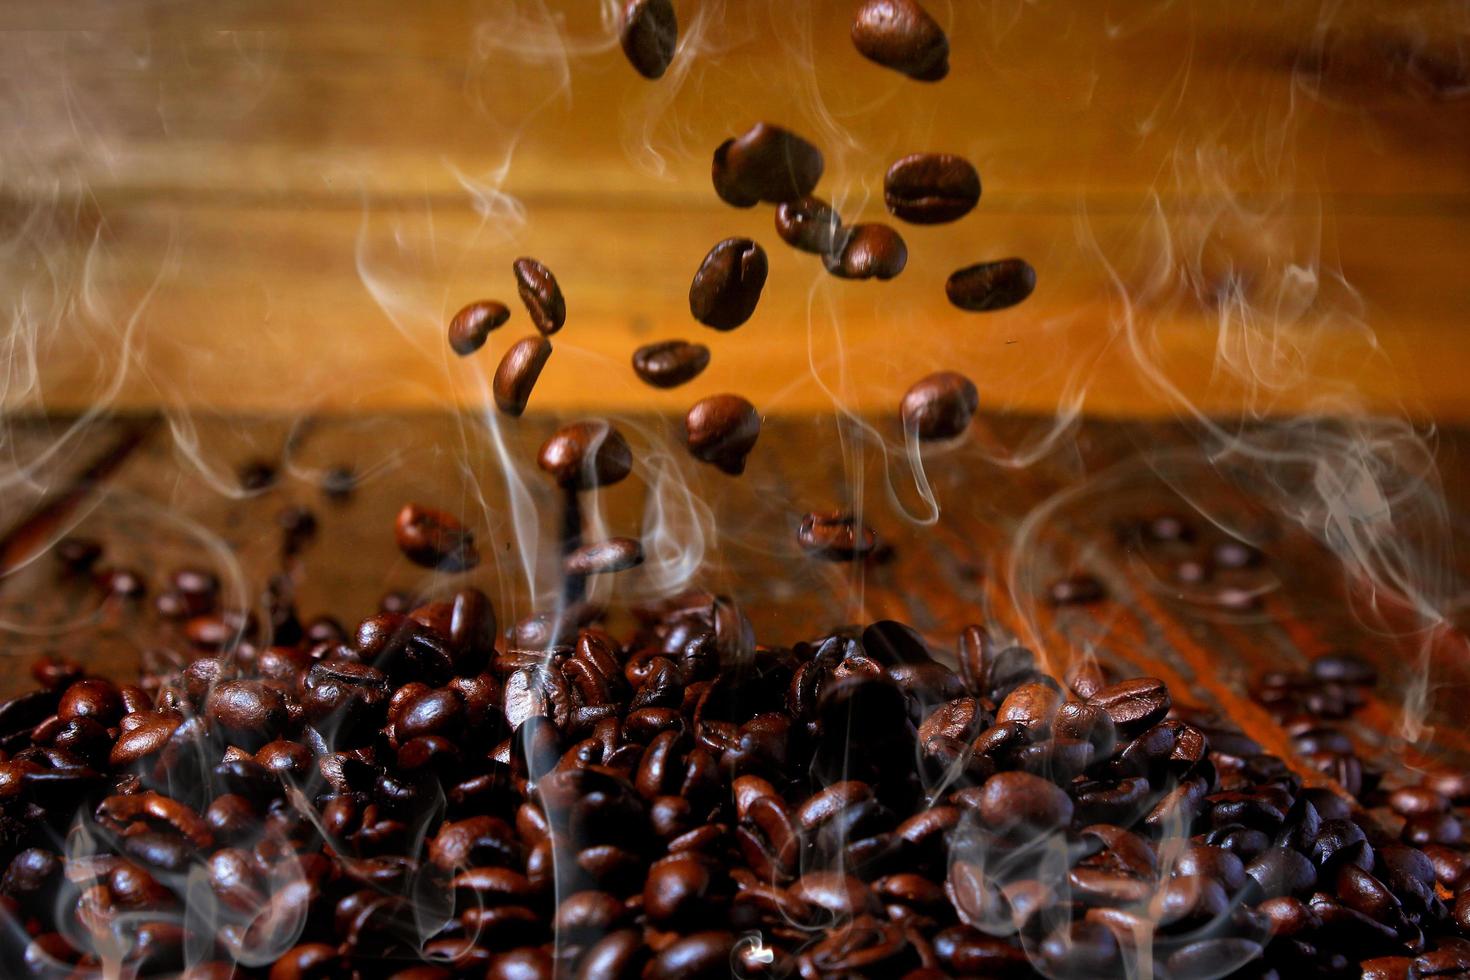 grãos de café torrados caindo na pilha, quentes e esfumaçados. fundo de madeira rústica desfocado foto